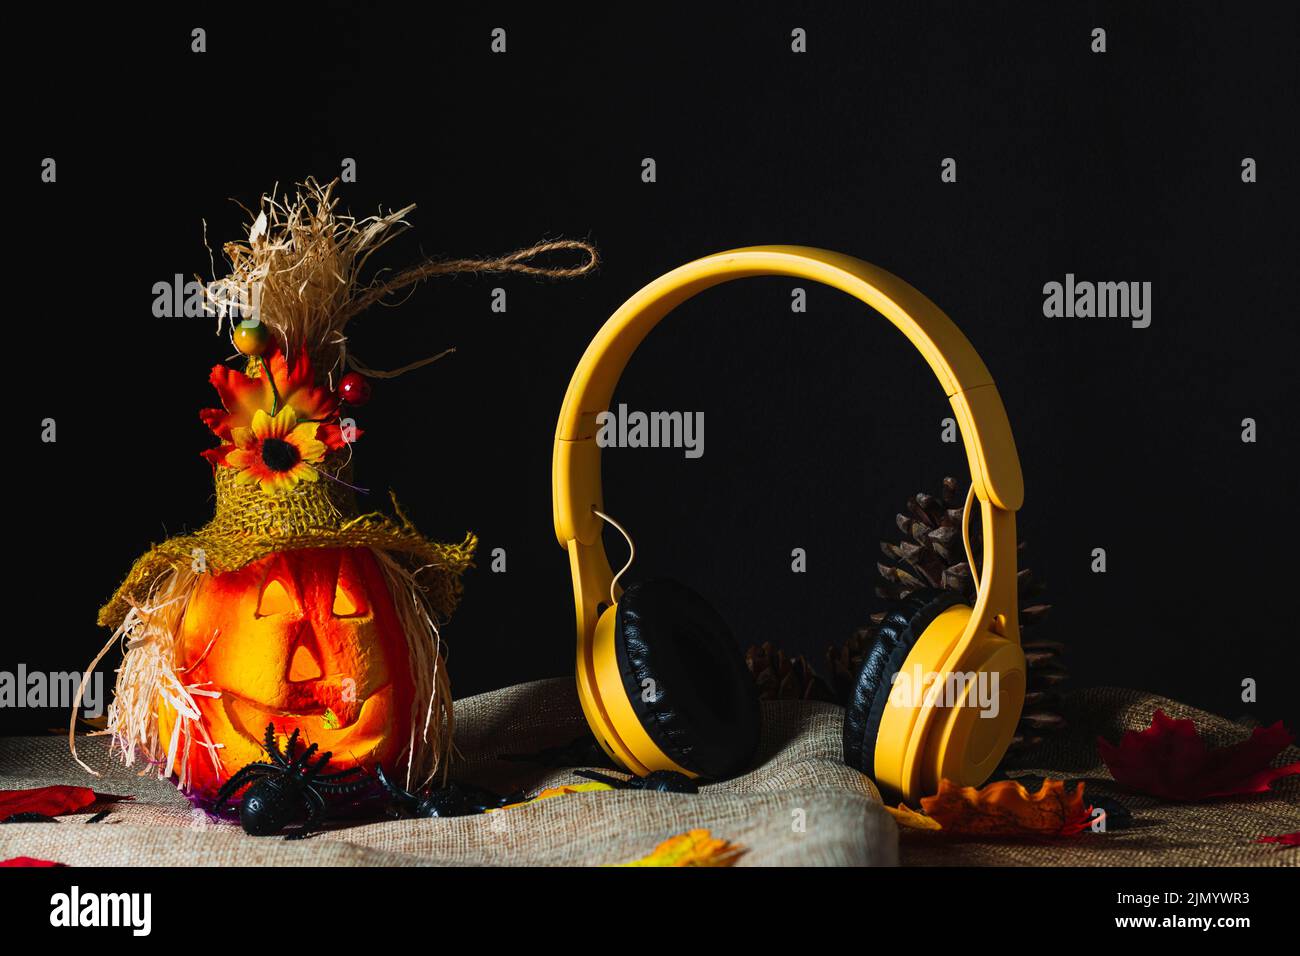 Cuffie wireless gialle in piedi accanto a una zucca ornata di Halloween su sackcloth e circondato da ragni giocattolo e foglie cadute accanto al cono di pino Foto Stock